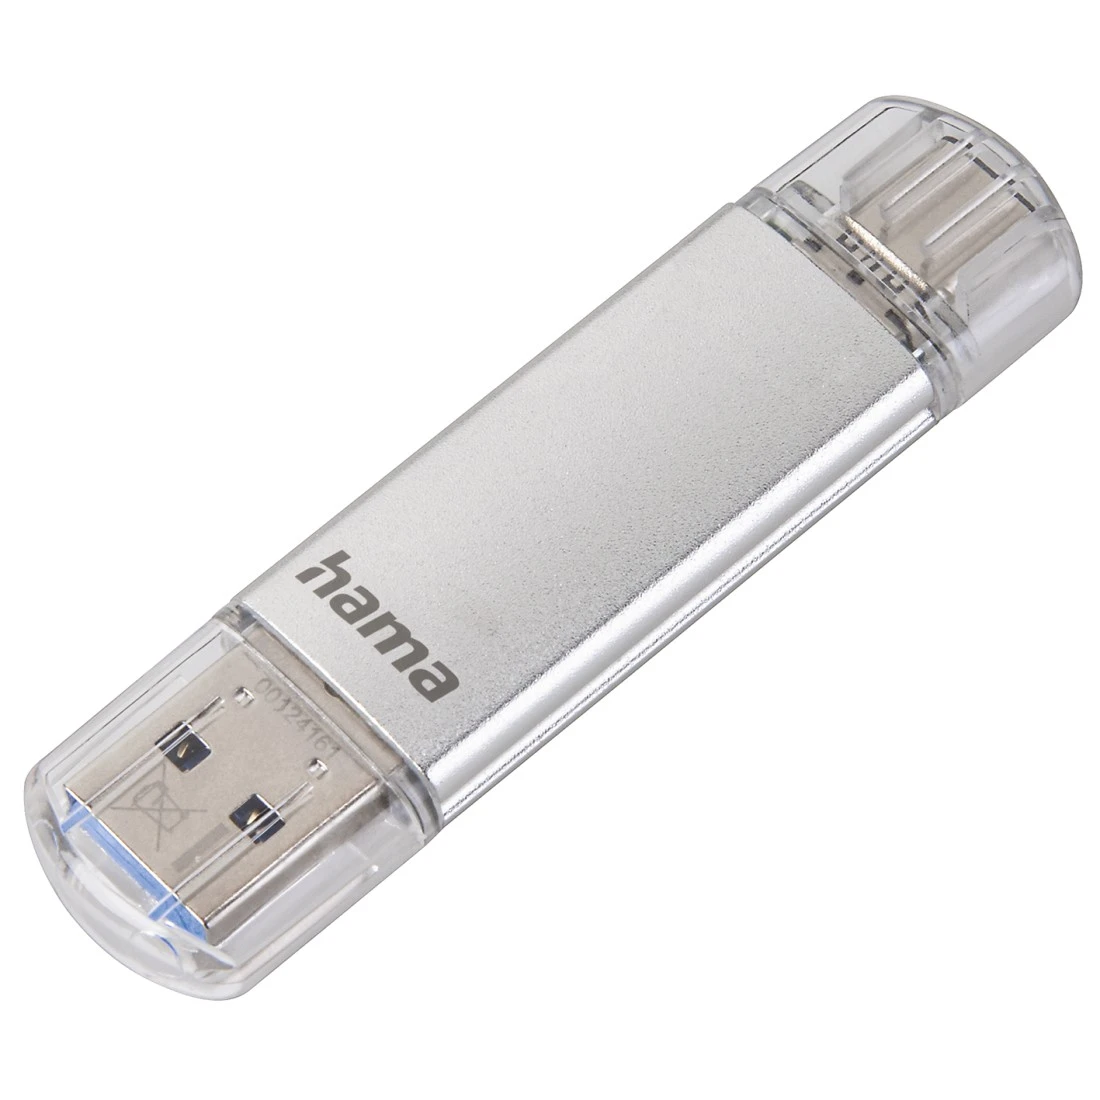 Clé USB C-Laeta, USB-C USB 3.1 / USB 3.0, 128 Go, 40 Mo / s, argentée